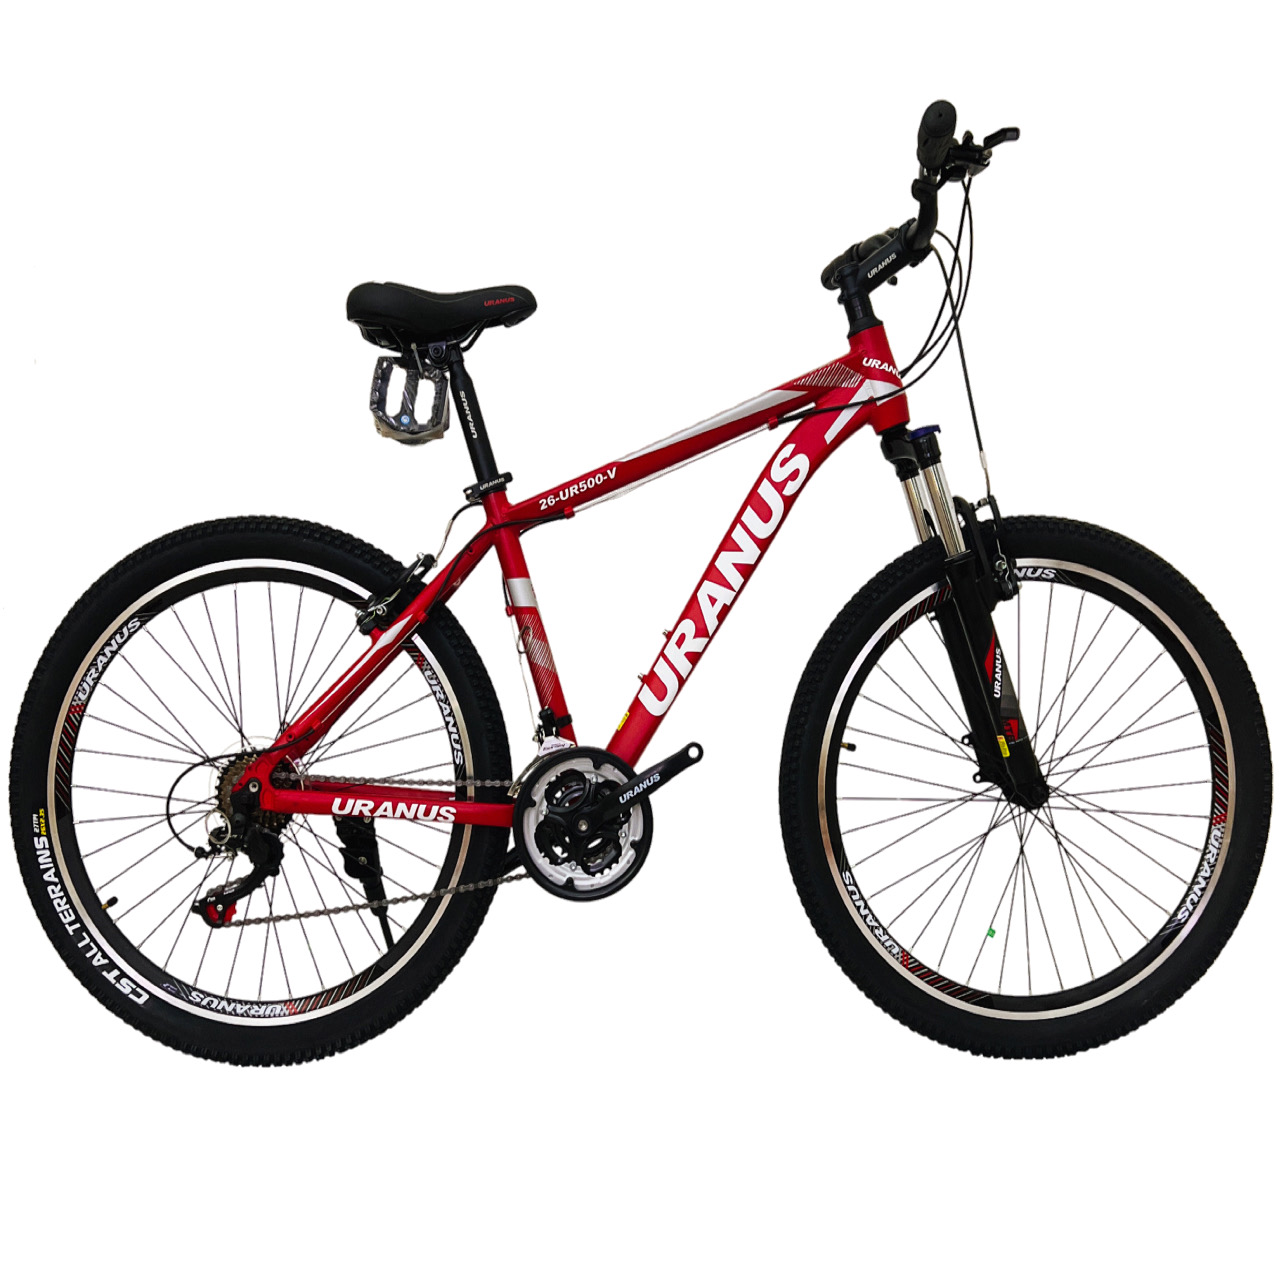 نکته خرید - قیمت روز دوچرخه کوهستان اورانوس مدل UR500-V سایز 26 خرید